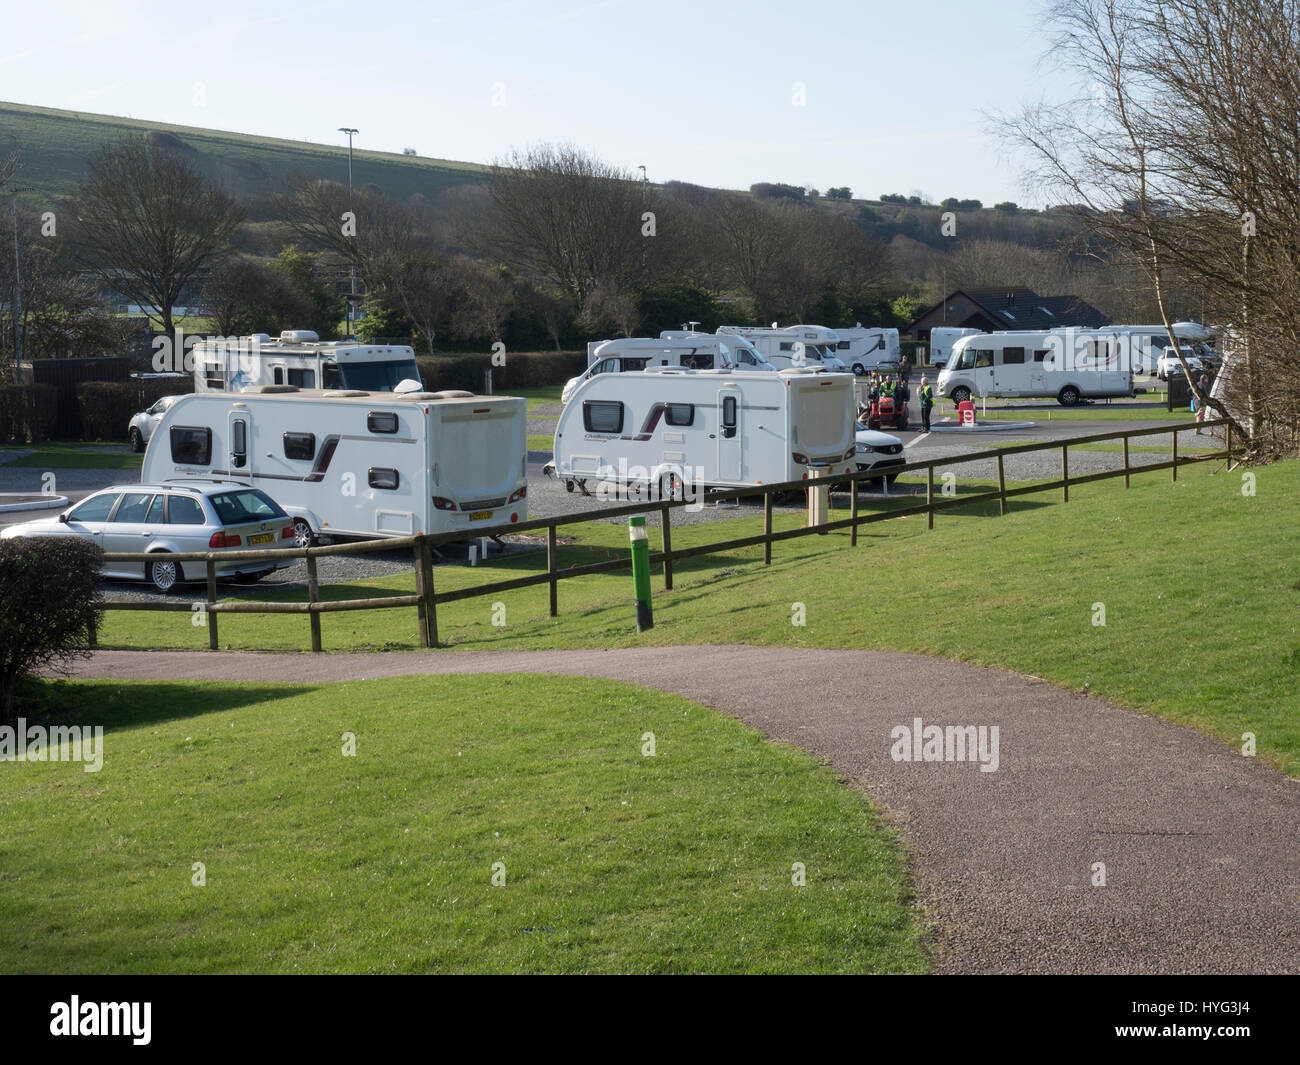 Eine Stromversorgung, Anschlüsse und Kabel auf einem Caravan Club  Campingplatz in England, Großbritannien Stockfotografie - Alamy